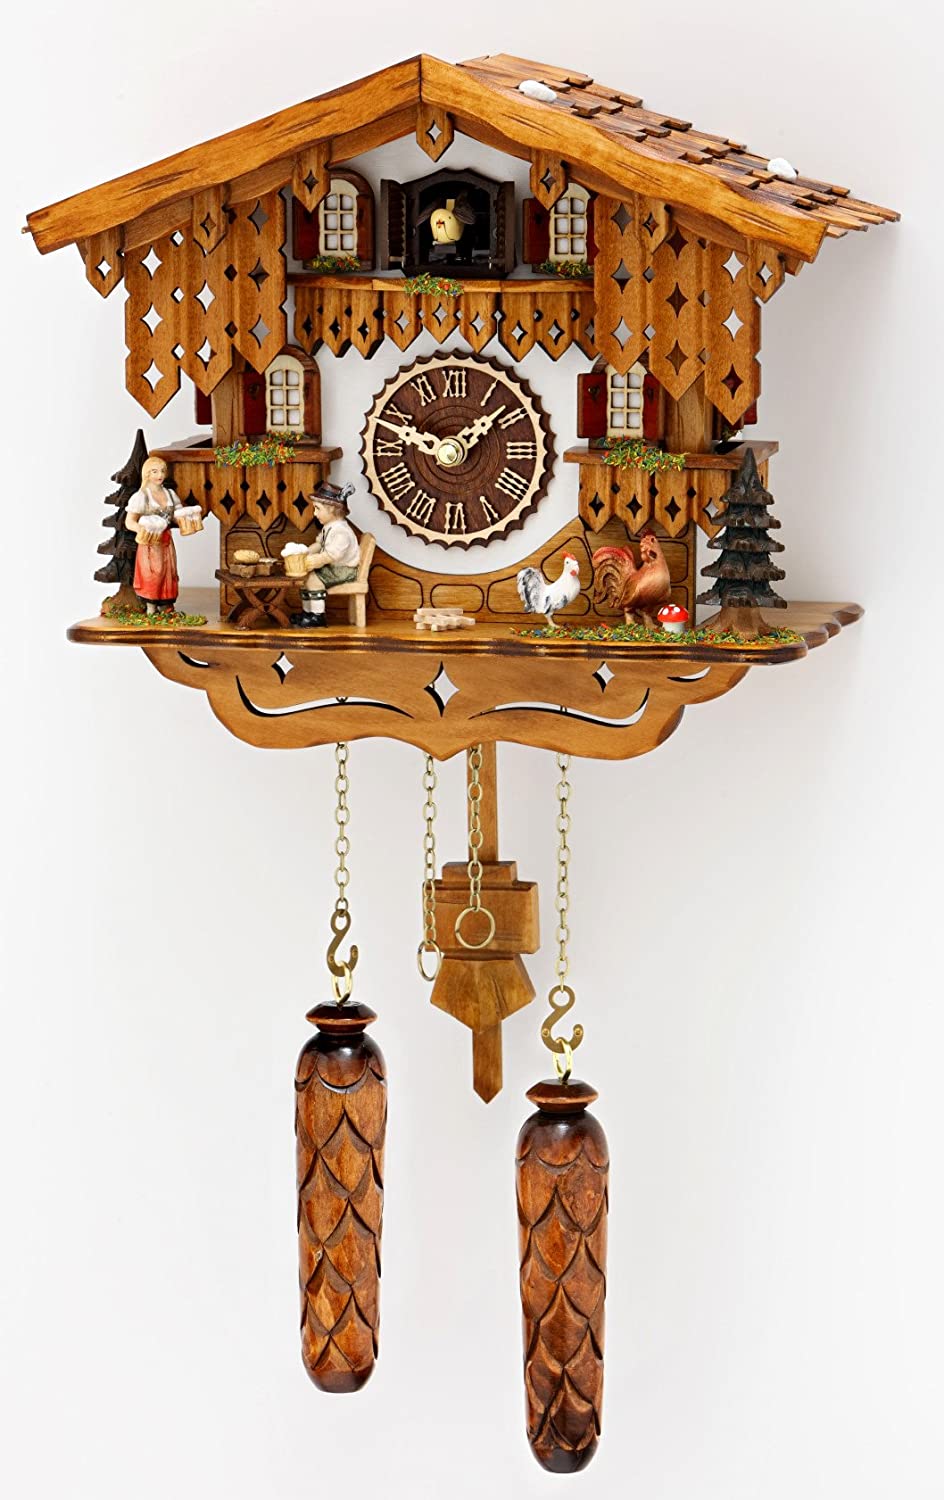 Original Schwarzwald- Kuckucksuhr mit 12 Melodien- Kuckuck- Cuckoo Clock- Trenkle Uhr